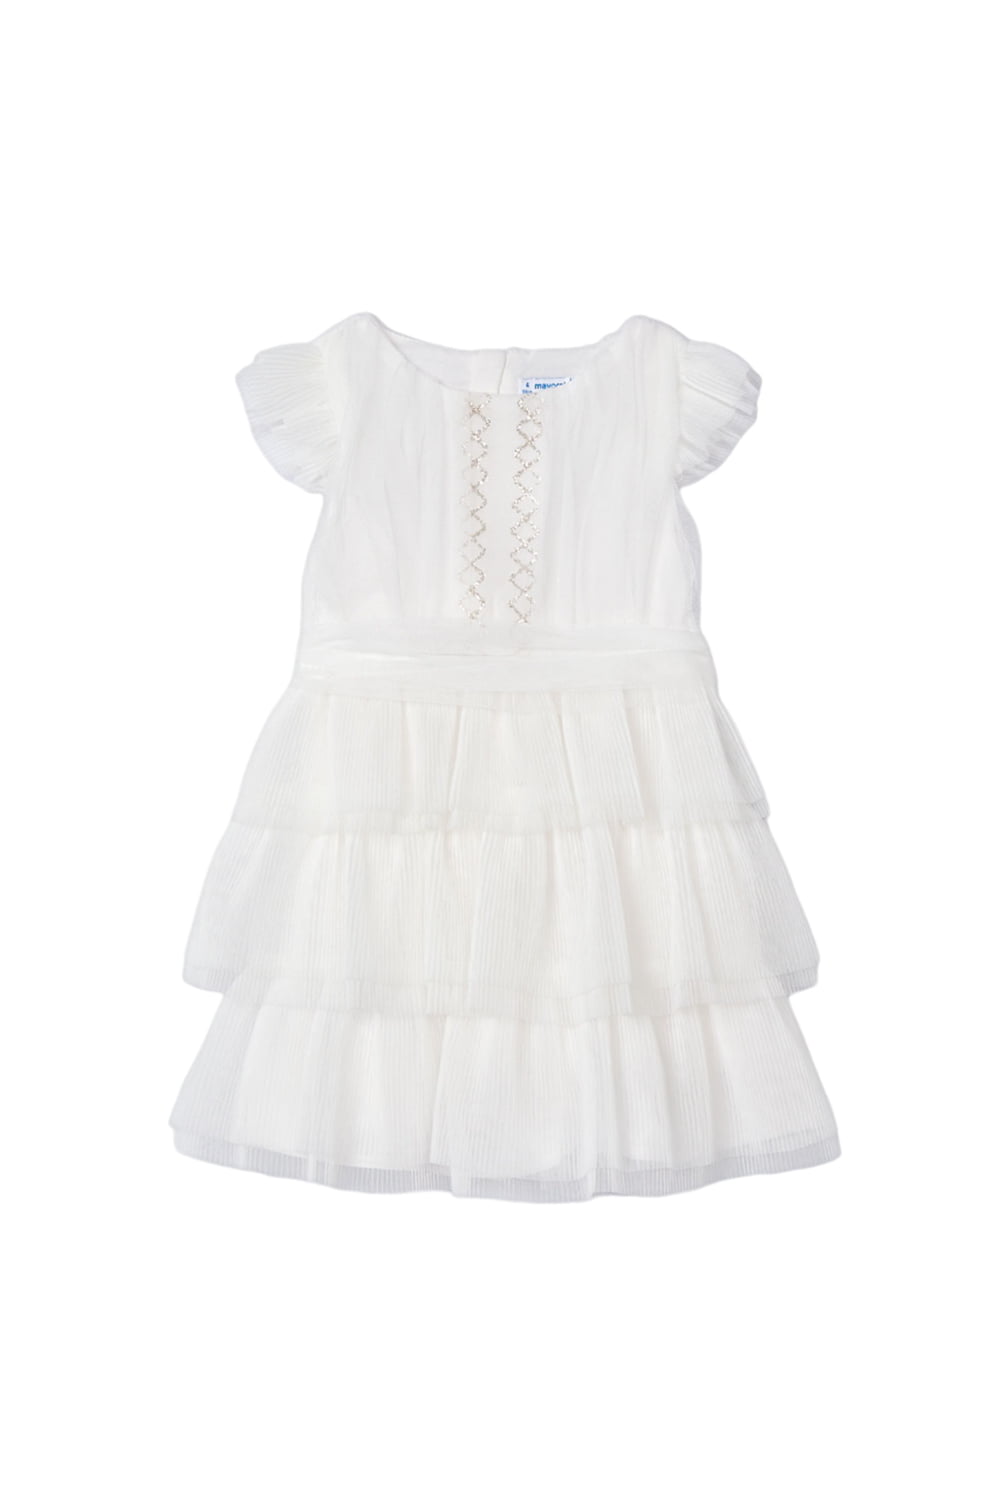 Παιδικό Φόρεμα Για Κορίτσι MAYORAL 24-03912-055 Άσπρο